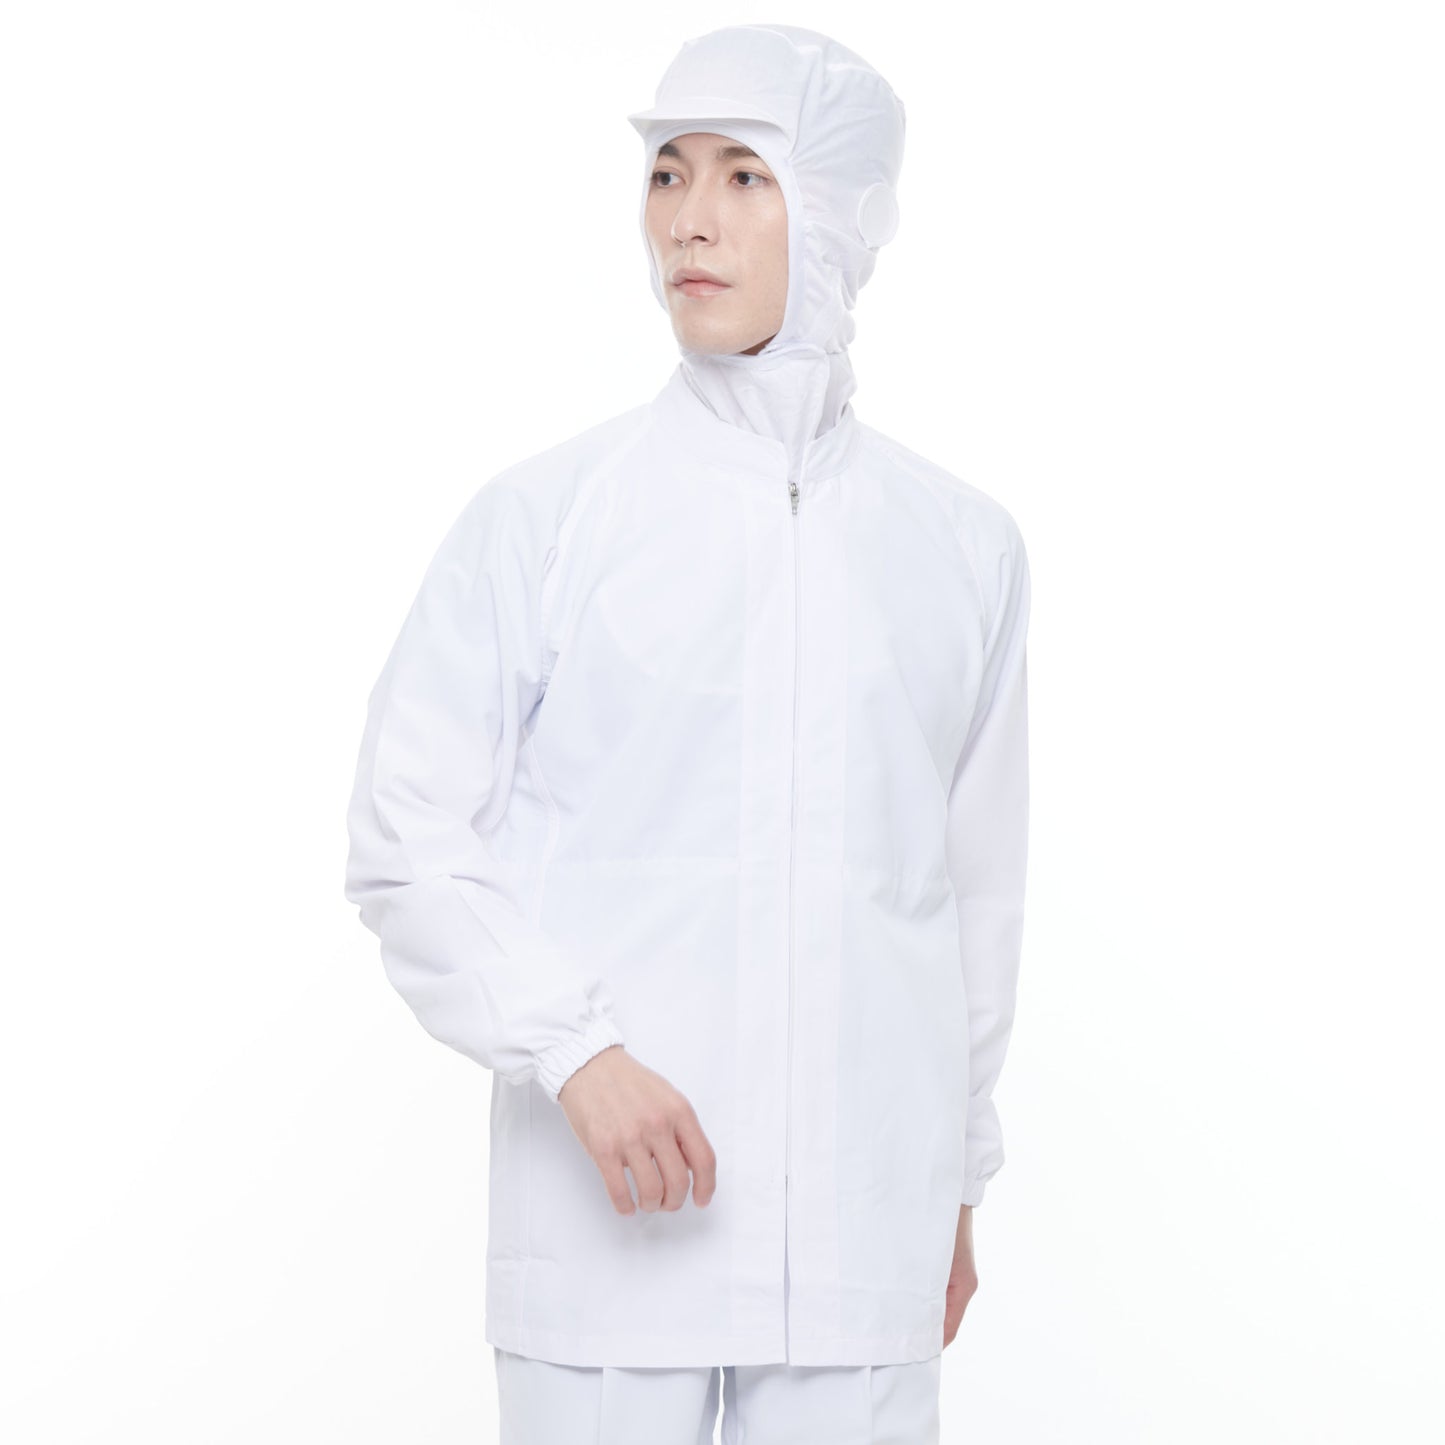 サンエス 食品工場用白衣 フードマイスター 超清涼素材 【男女共用コート】 FX70650R